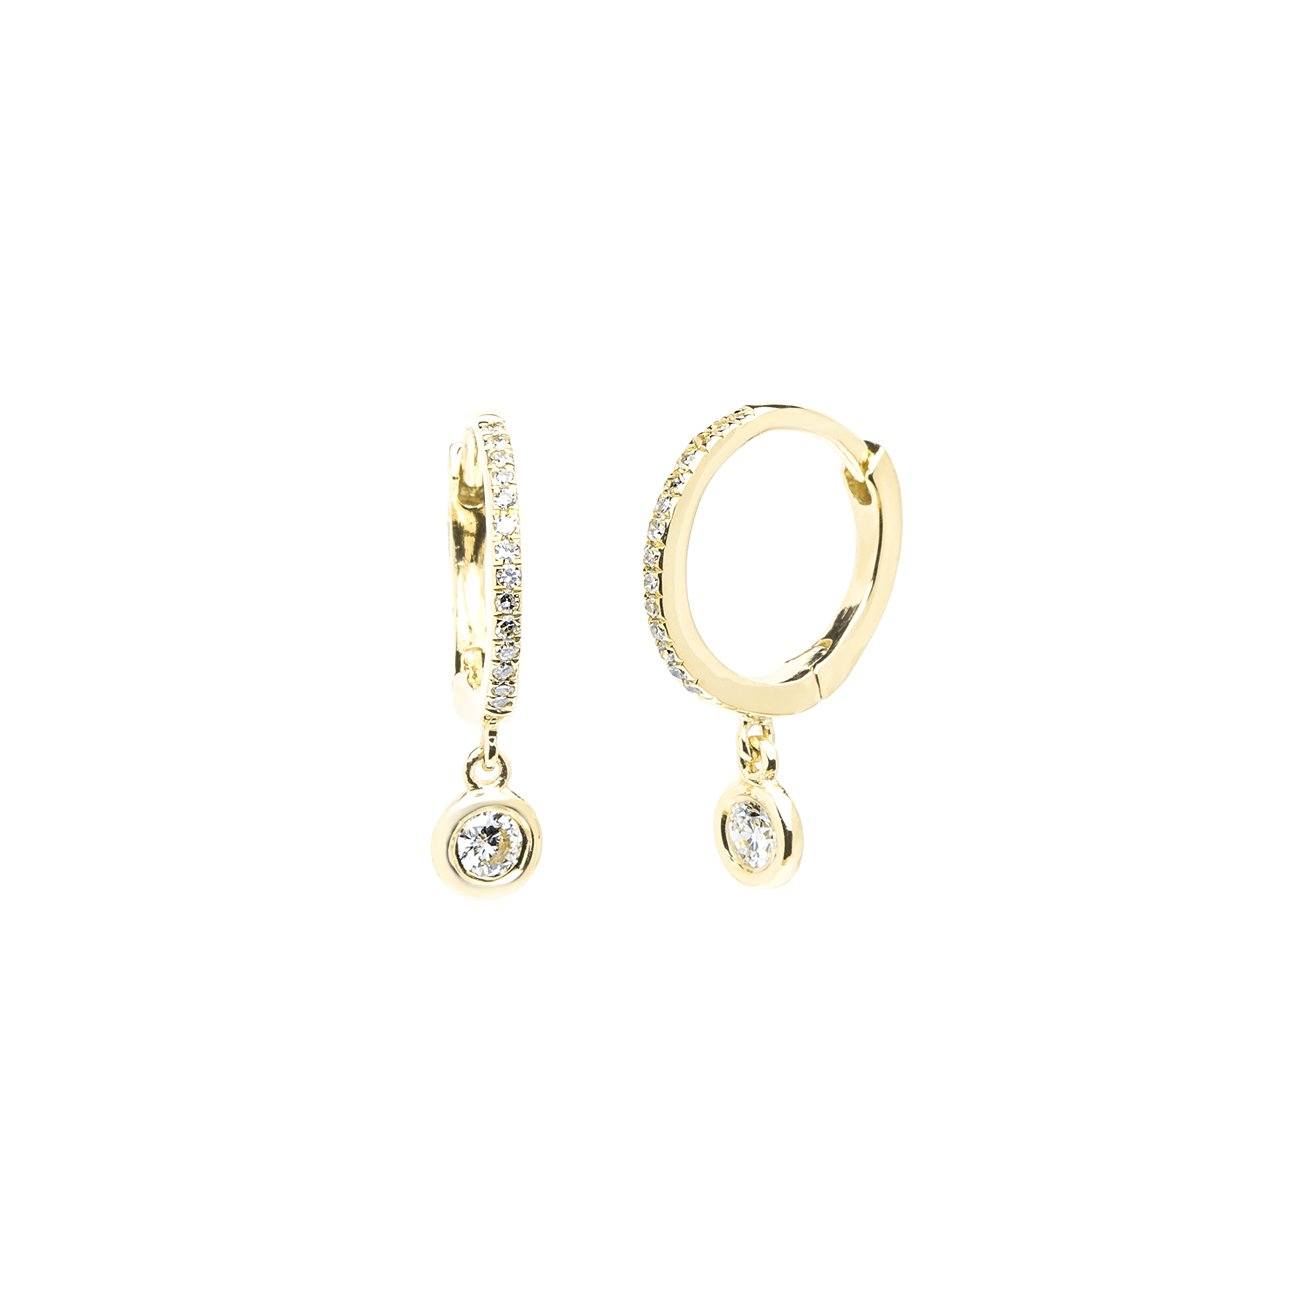 Diamond Drop Earrings Fine Jewelry Earrings Princess Bride Diamonds 14K Yellow Gold 